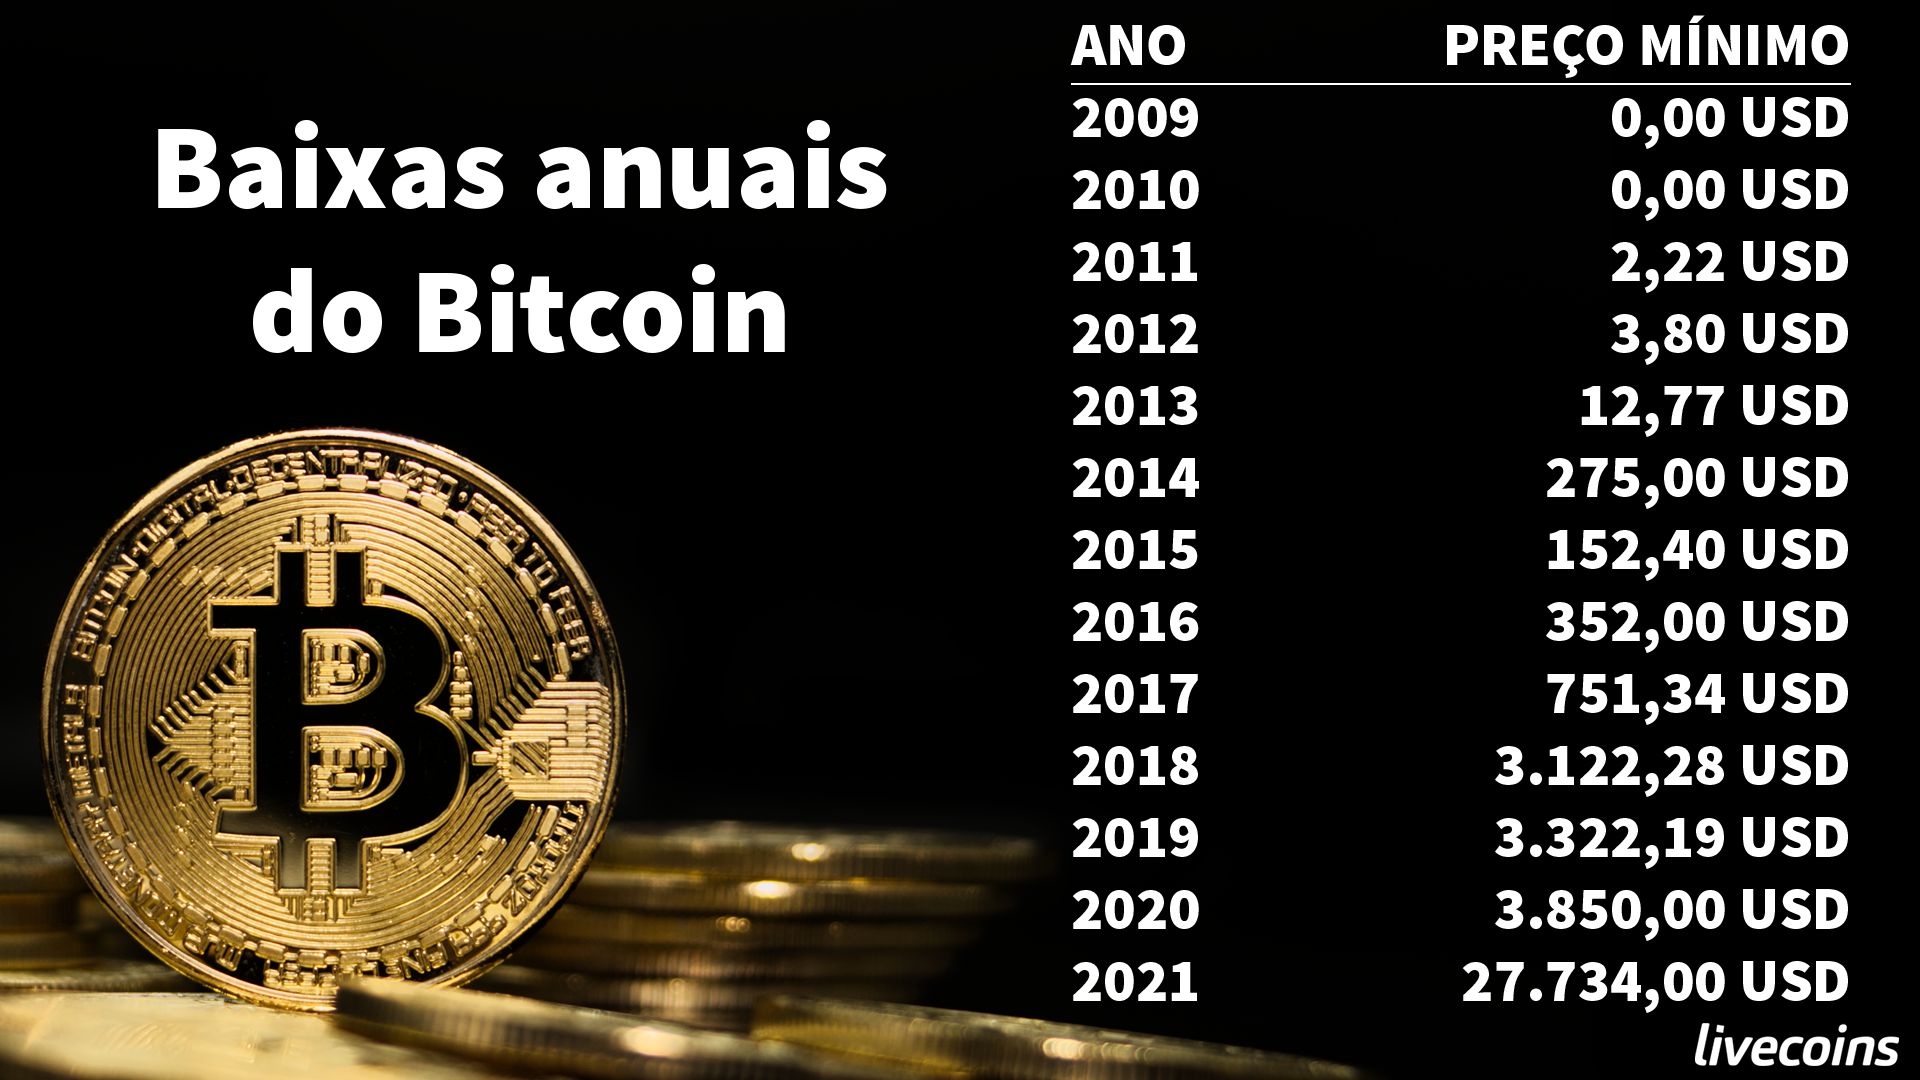 Preço mínimo anual do Bitcoin. Dados: Bitstamp